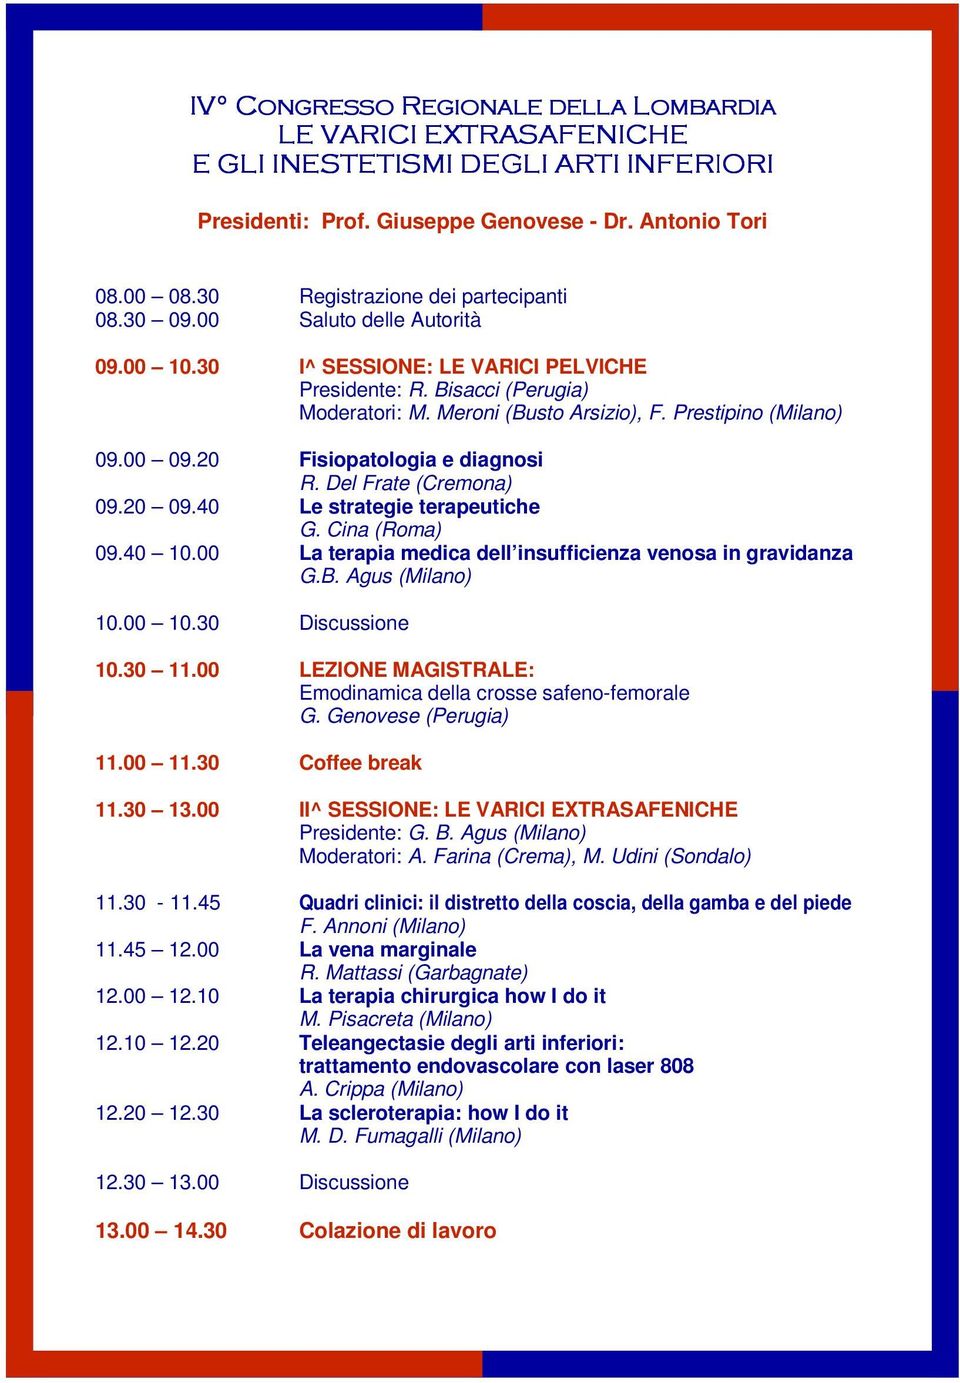 40 10.00 La terapia medica dell insufficienza venosa in gravidanza G.B. Agus (Milano) 10.00 10.30 Discussione 10.30 11.00 LEZIONE MAGISTRALE: Emodinamica della crosse safeno-femorale G.